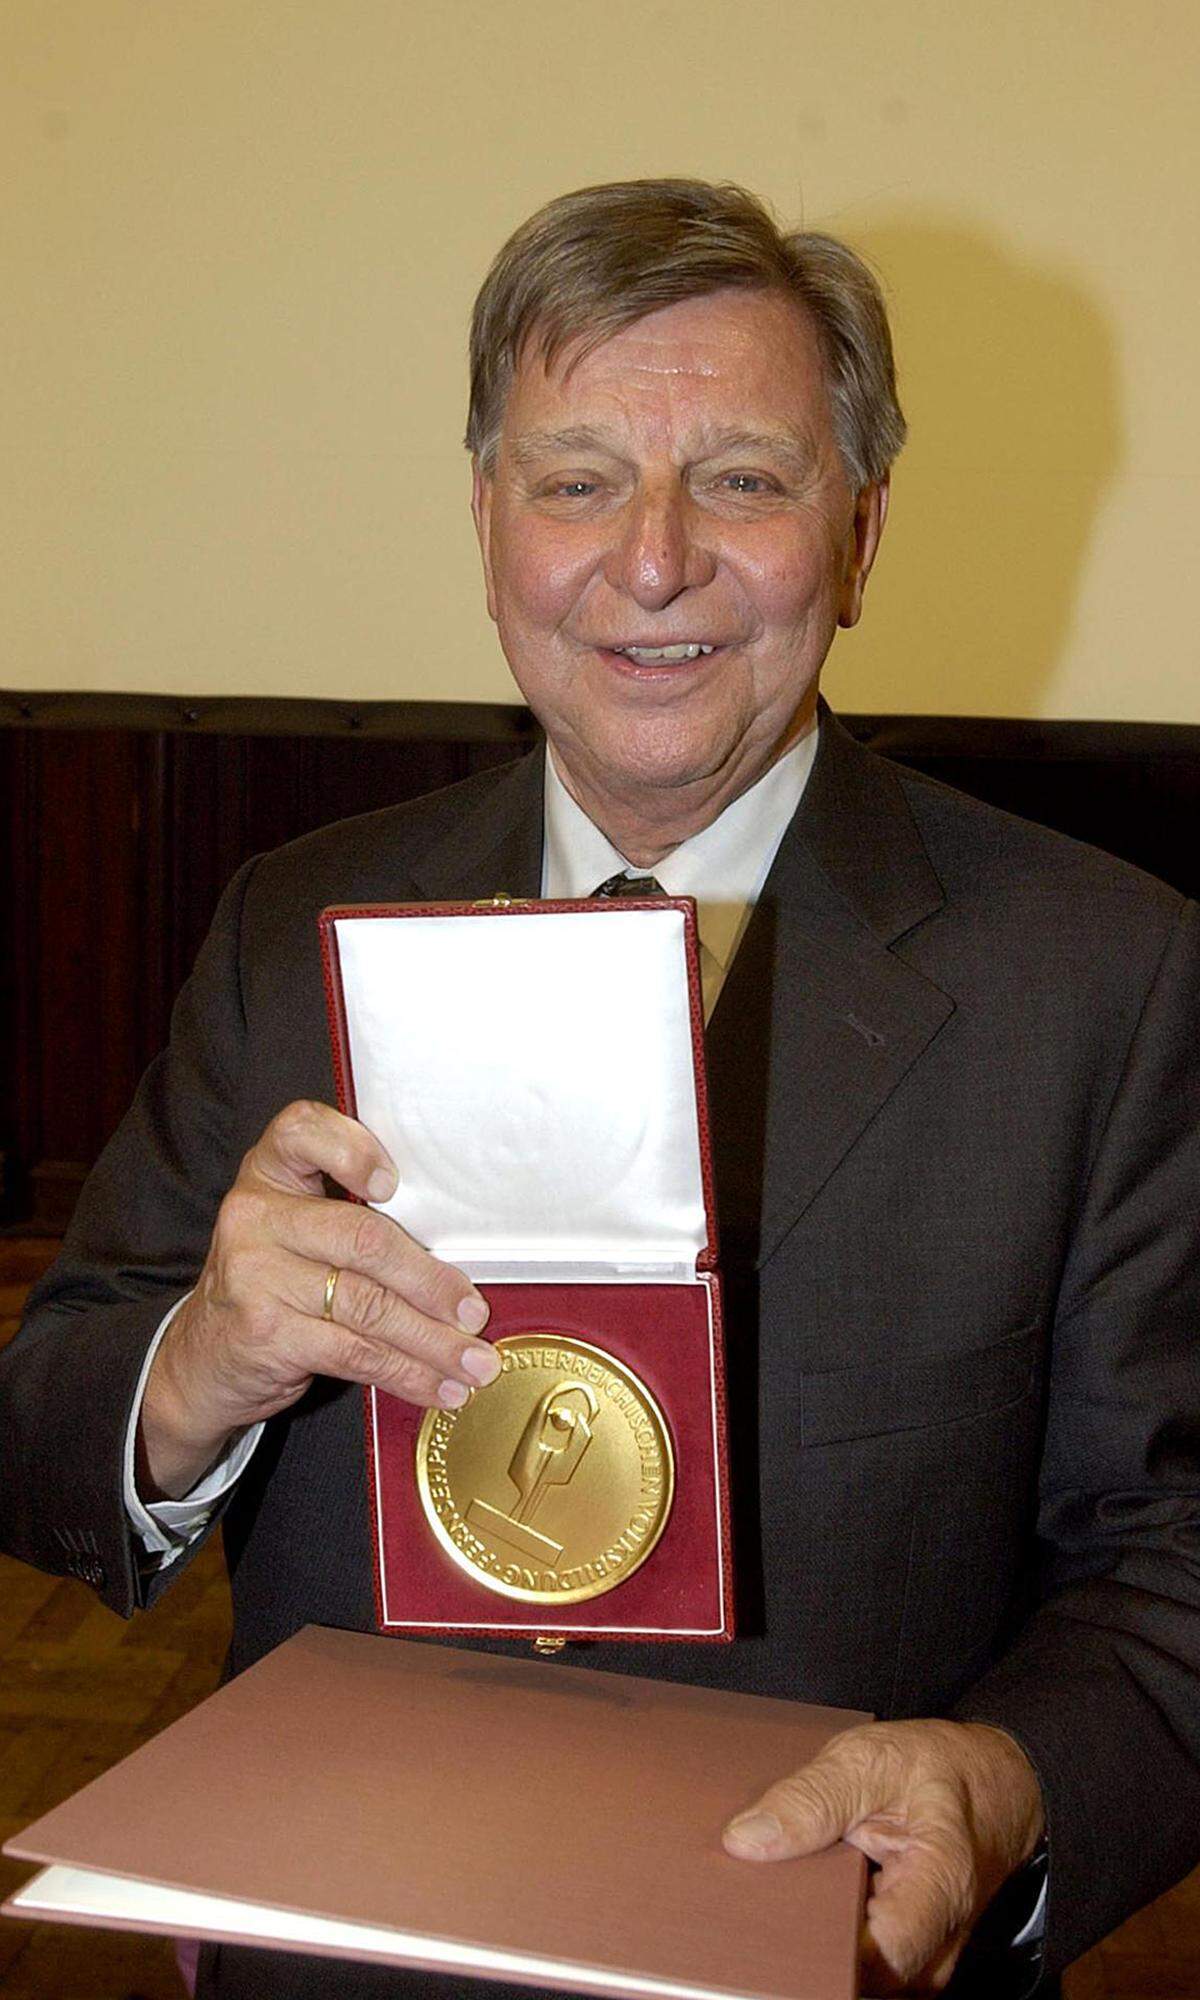 Für seine Arbeit wurde Portisch u.a. mit dem Karl-Renner-Preis, dem Österreichischen Staatspreis, der Goldenen Kamera und dem Fernsehpreis "Romy" ausgezeichnet.